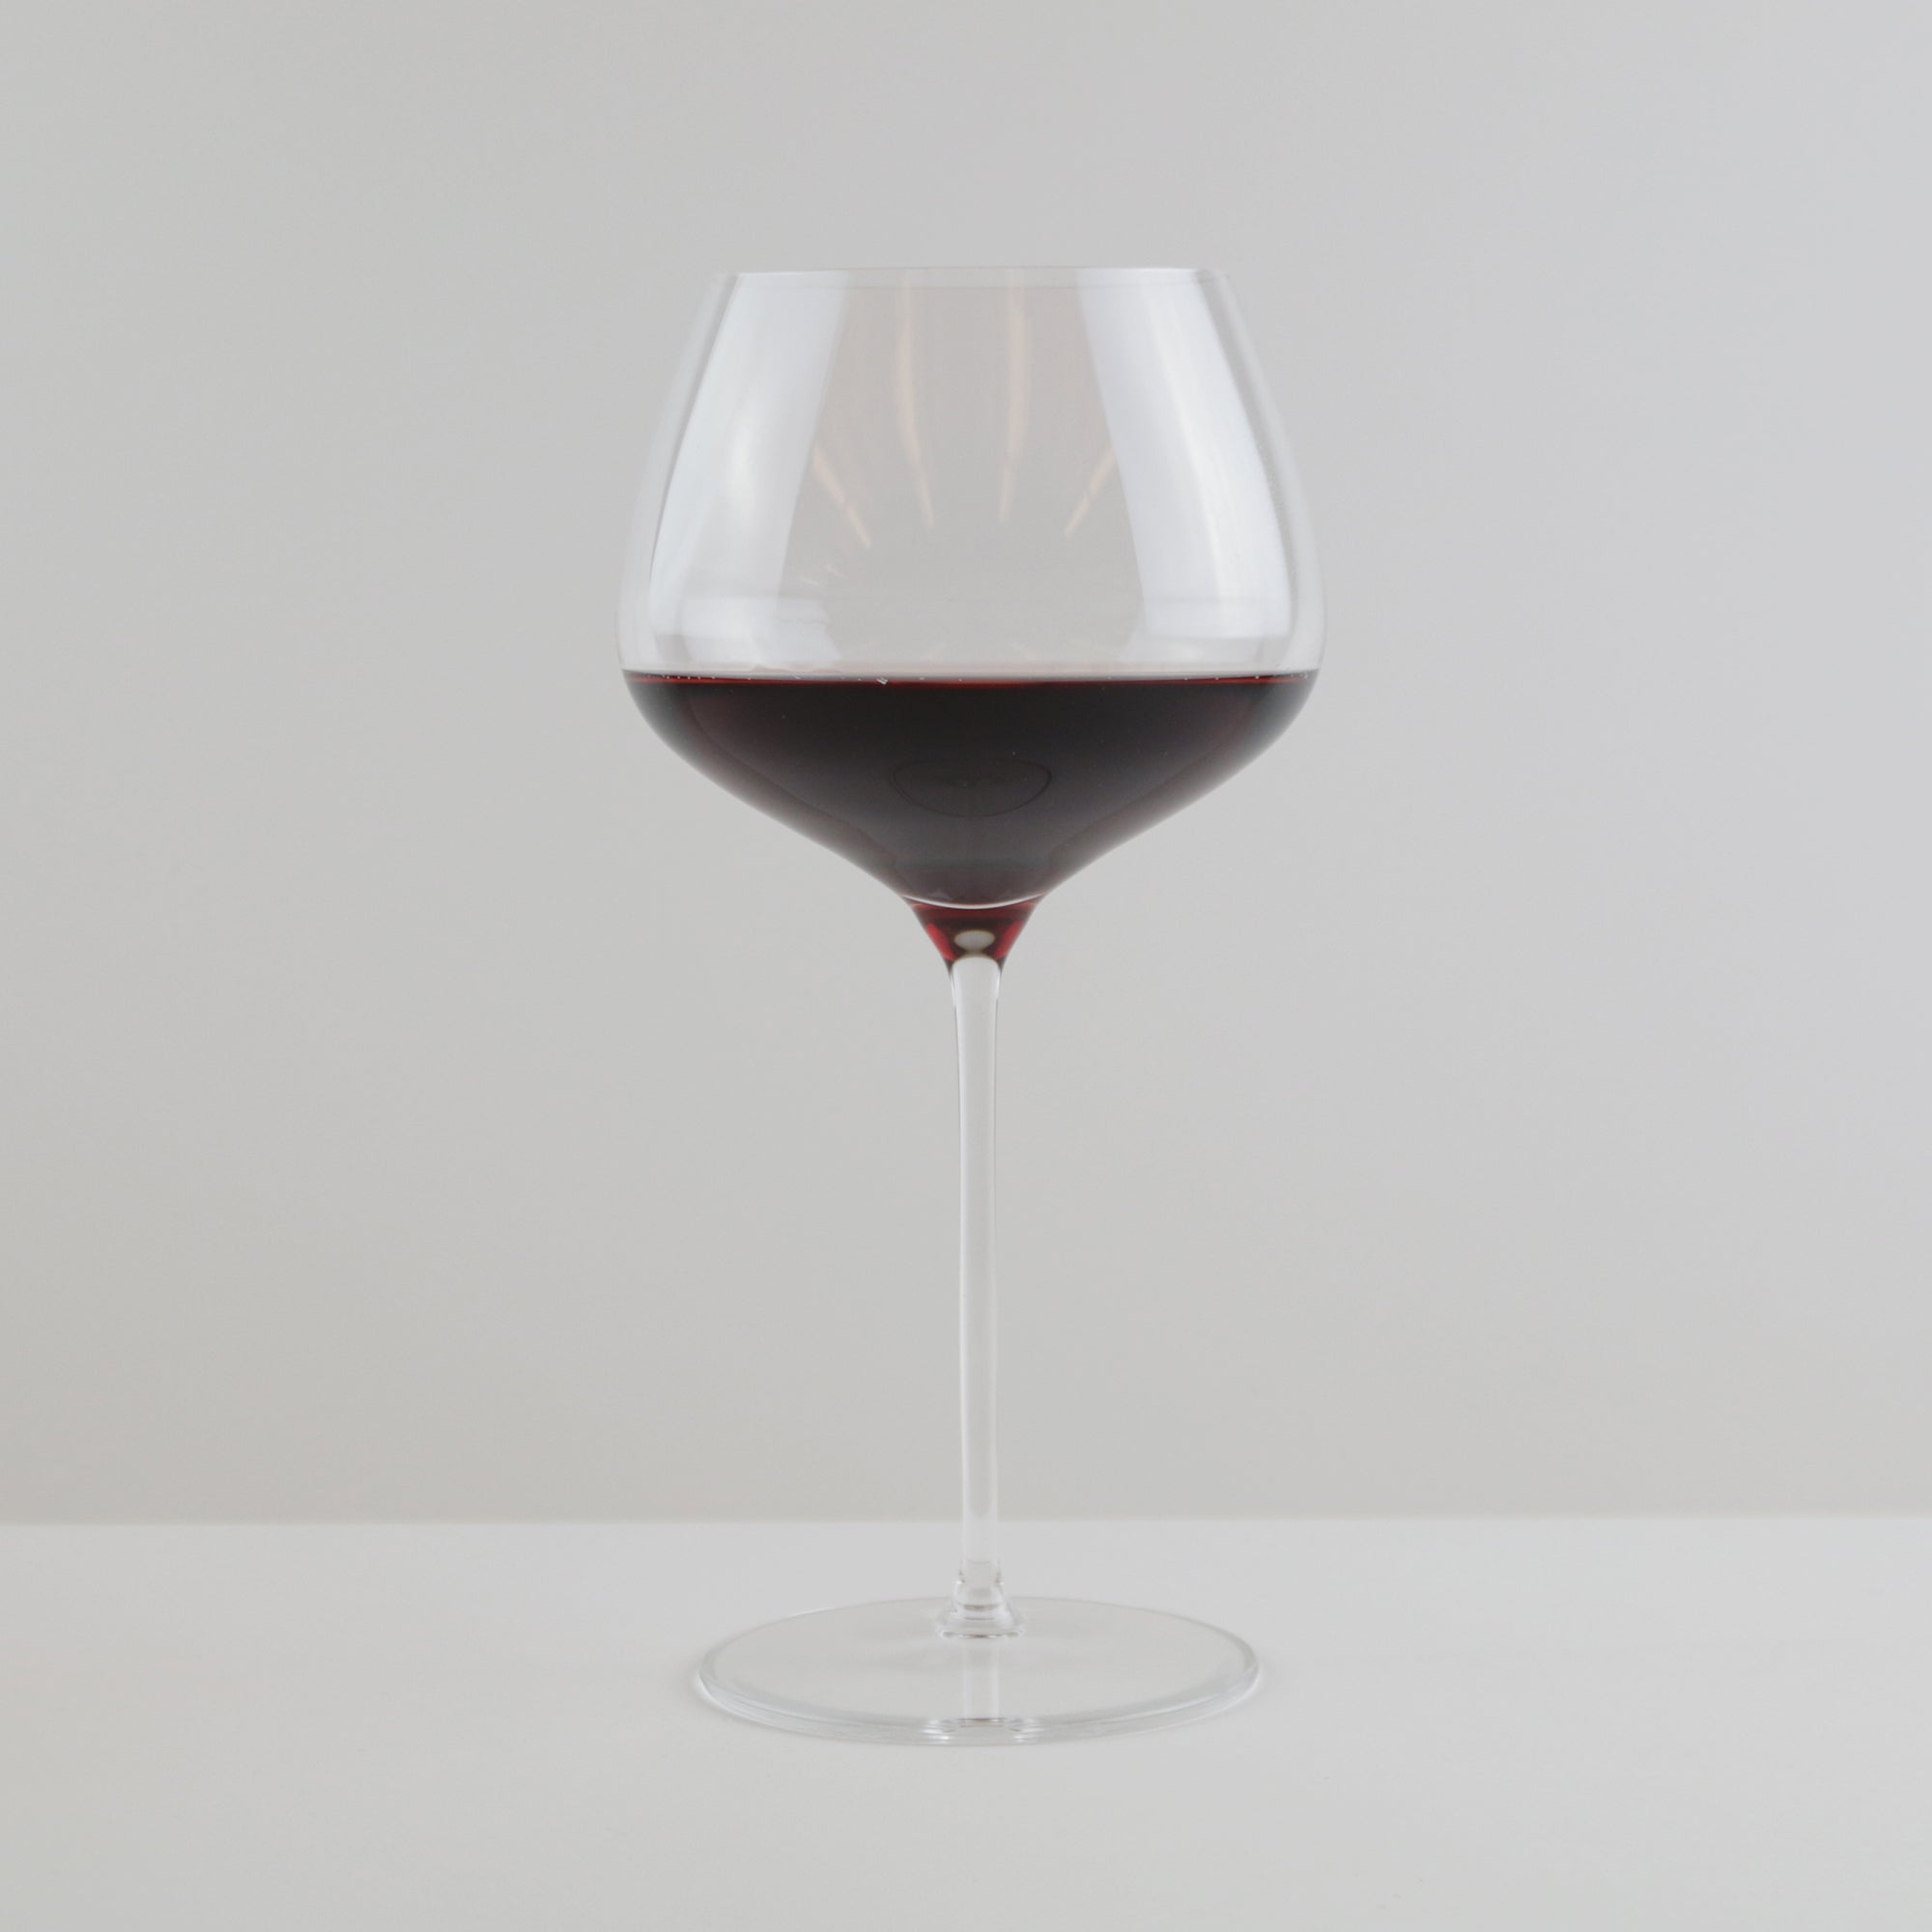 Willsberger 26-Oz. Burgundy Glasses, Set of 4 + Reviews